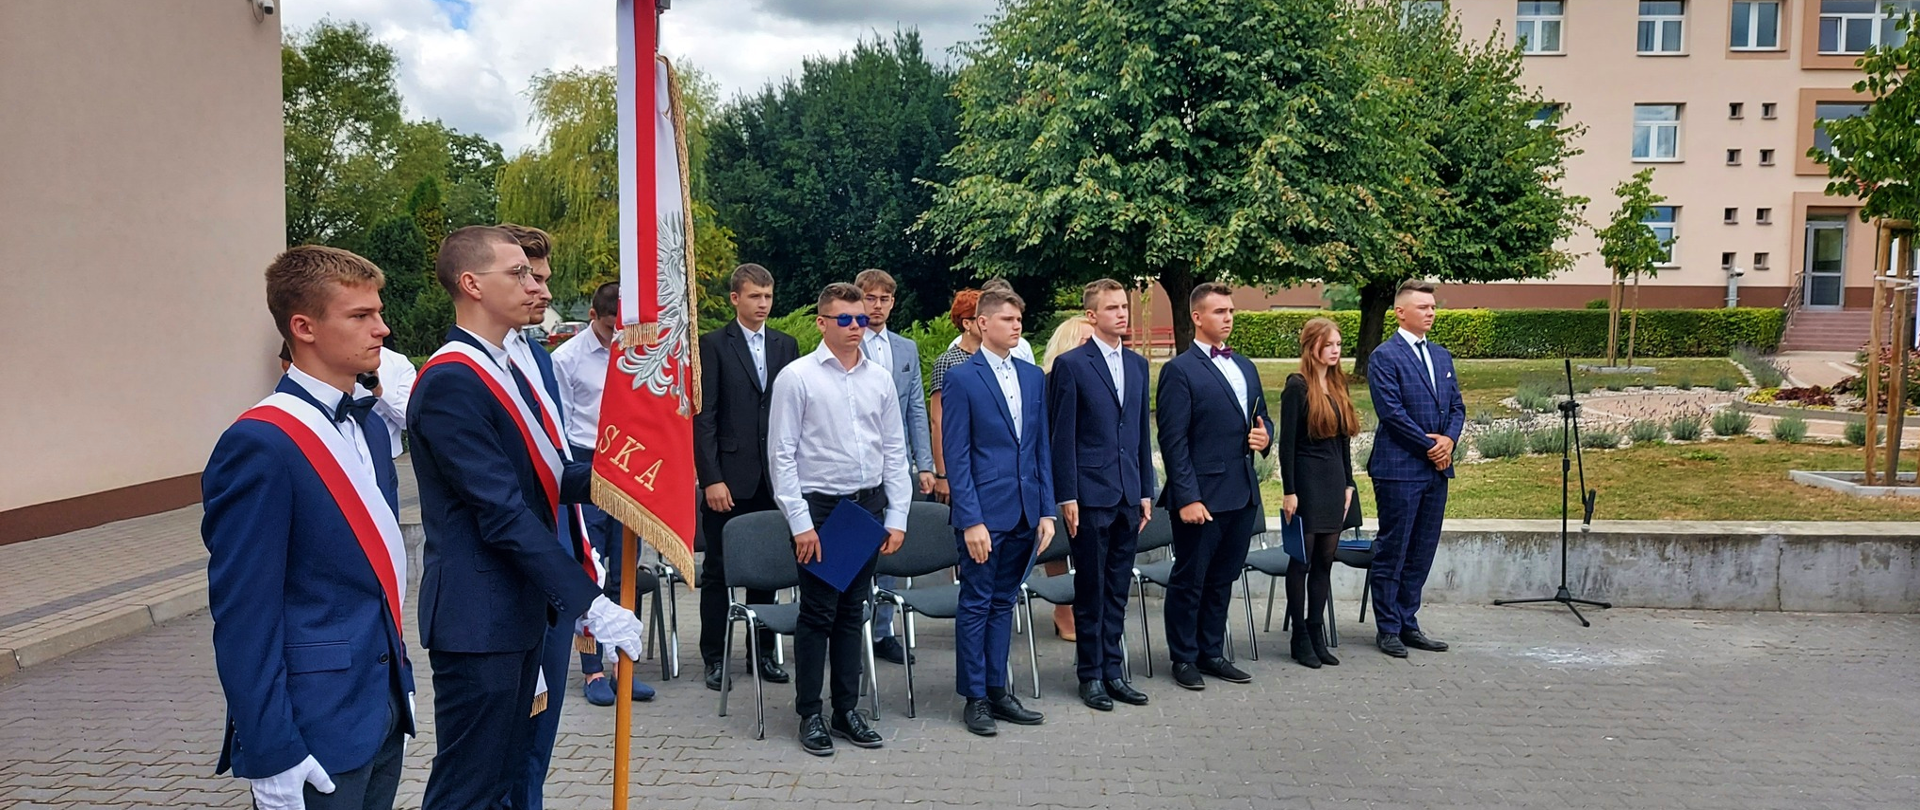 Wojewódzka inauguracja roku szkolnego w Czartajewie